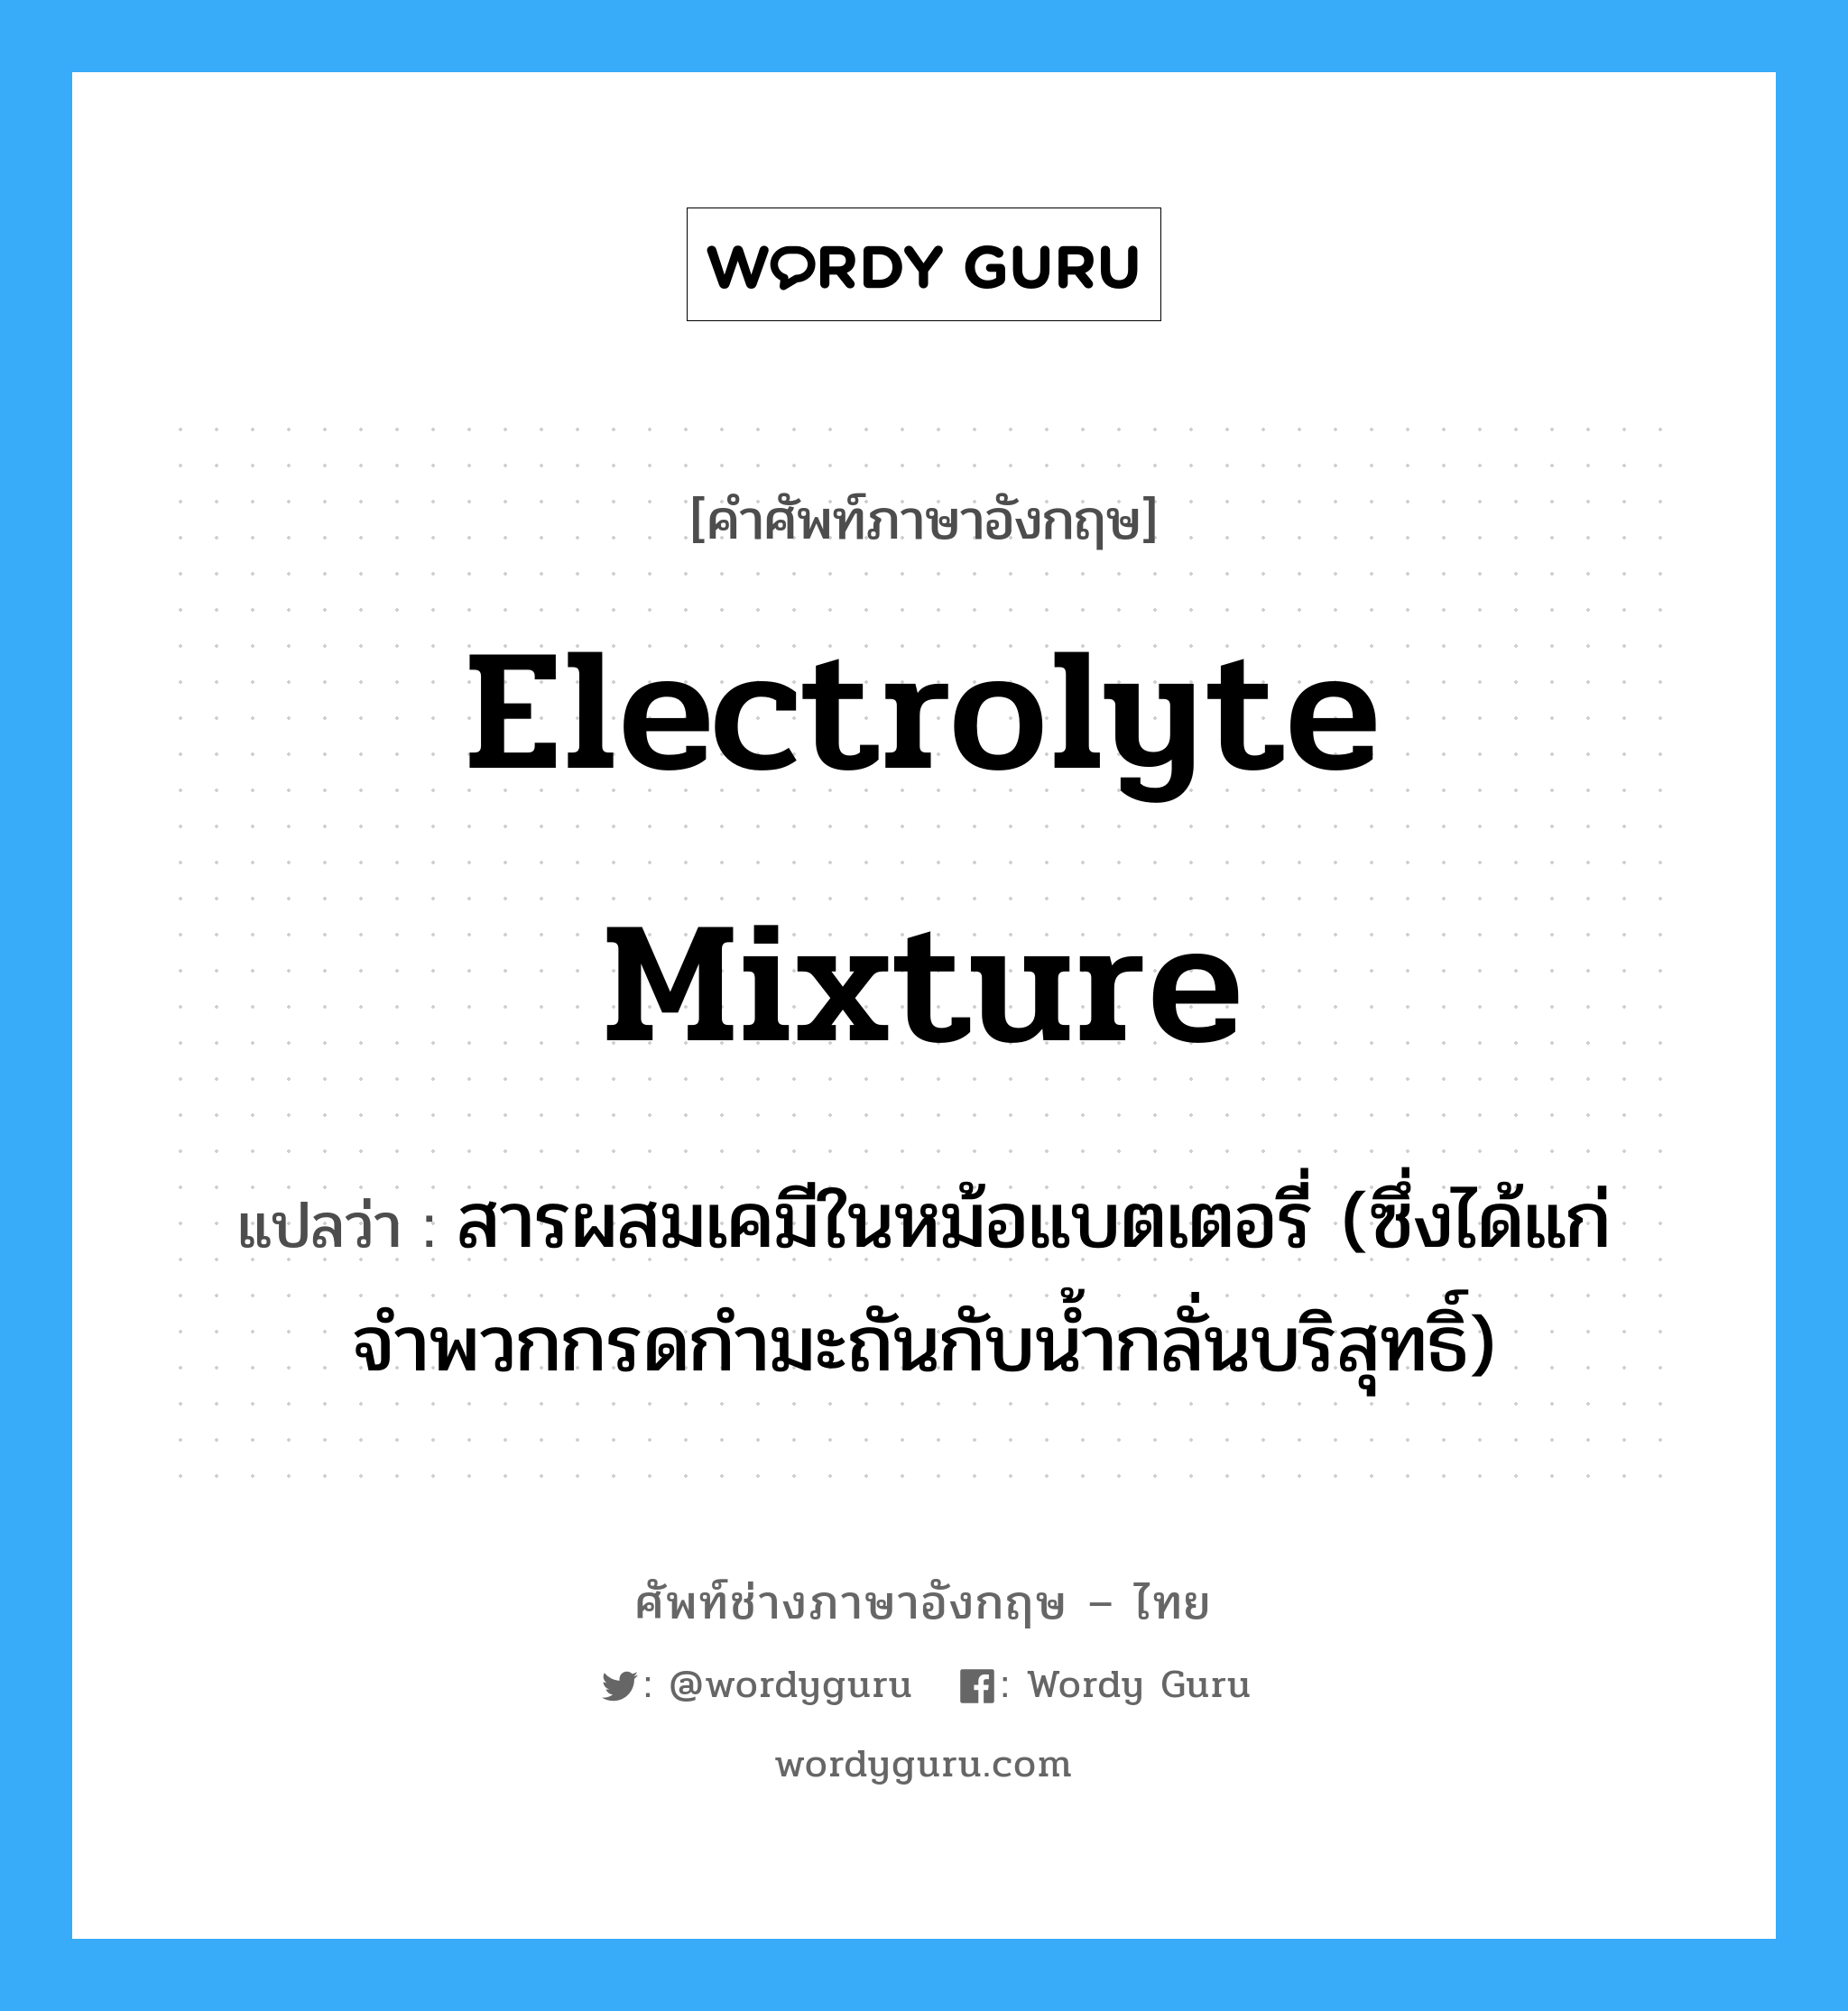 electrolyte mixture แปลว่า?, คำศัพท์ช่างภาษาอังกฤษ - ไทย electrolyte mixture คำศัพท์ภาษาอังกฤษ electrolyte mixture แปลว่า สารผสมเคมีในหม้อแบตเตอรี่ (ซึ่งได้แก่จำพวกกรดกำมะถันกับน้ำกลั่นบริสุทธิ์)